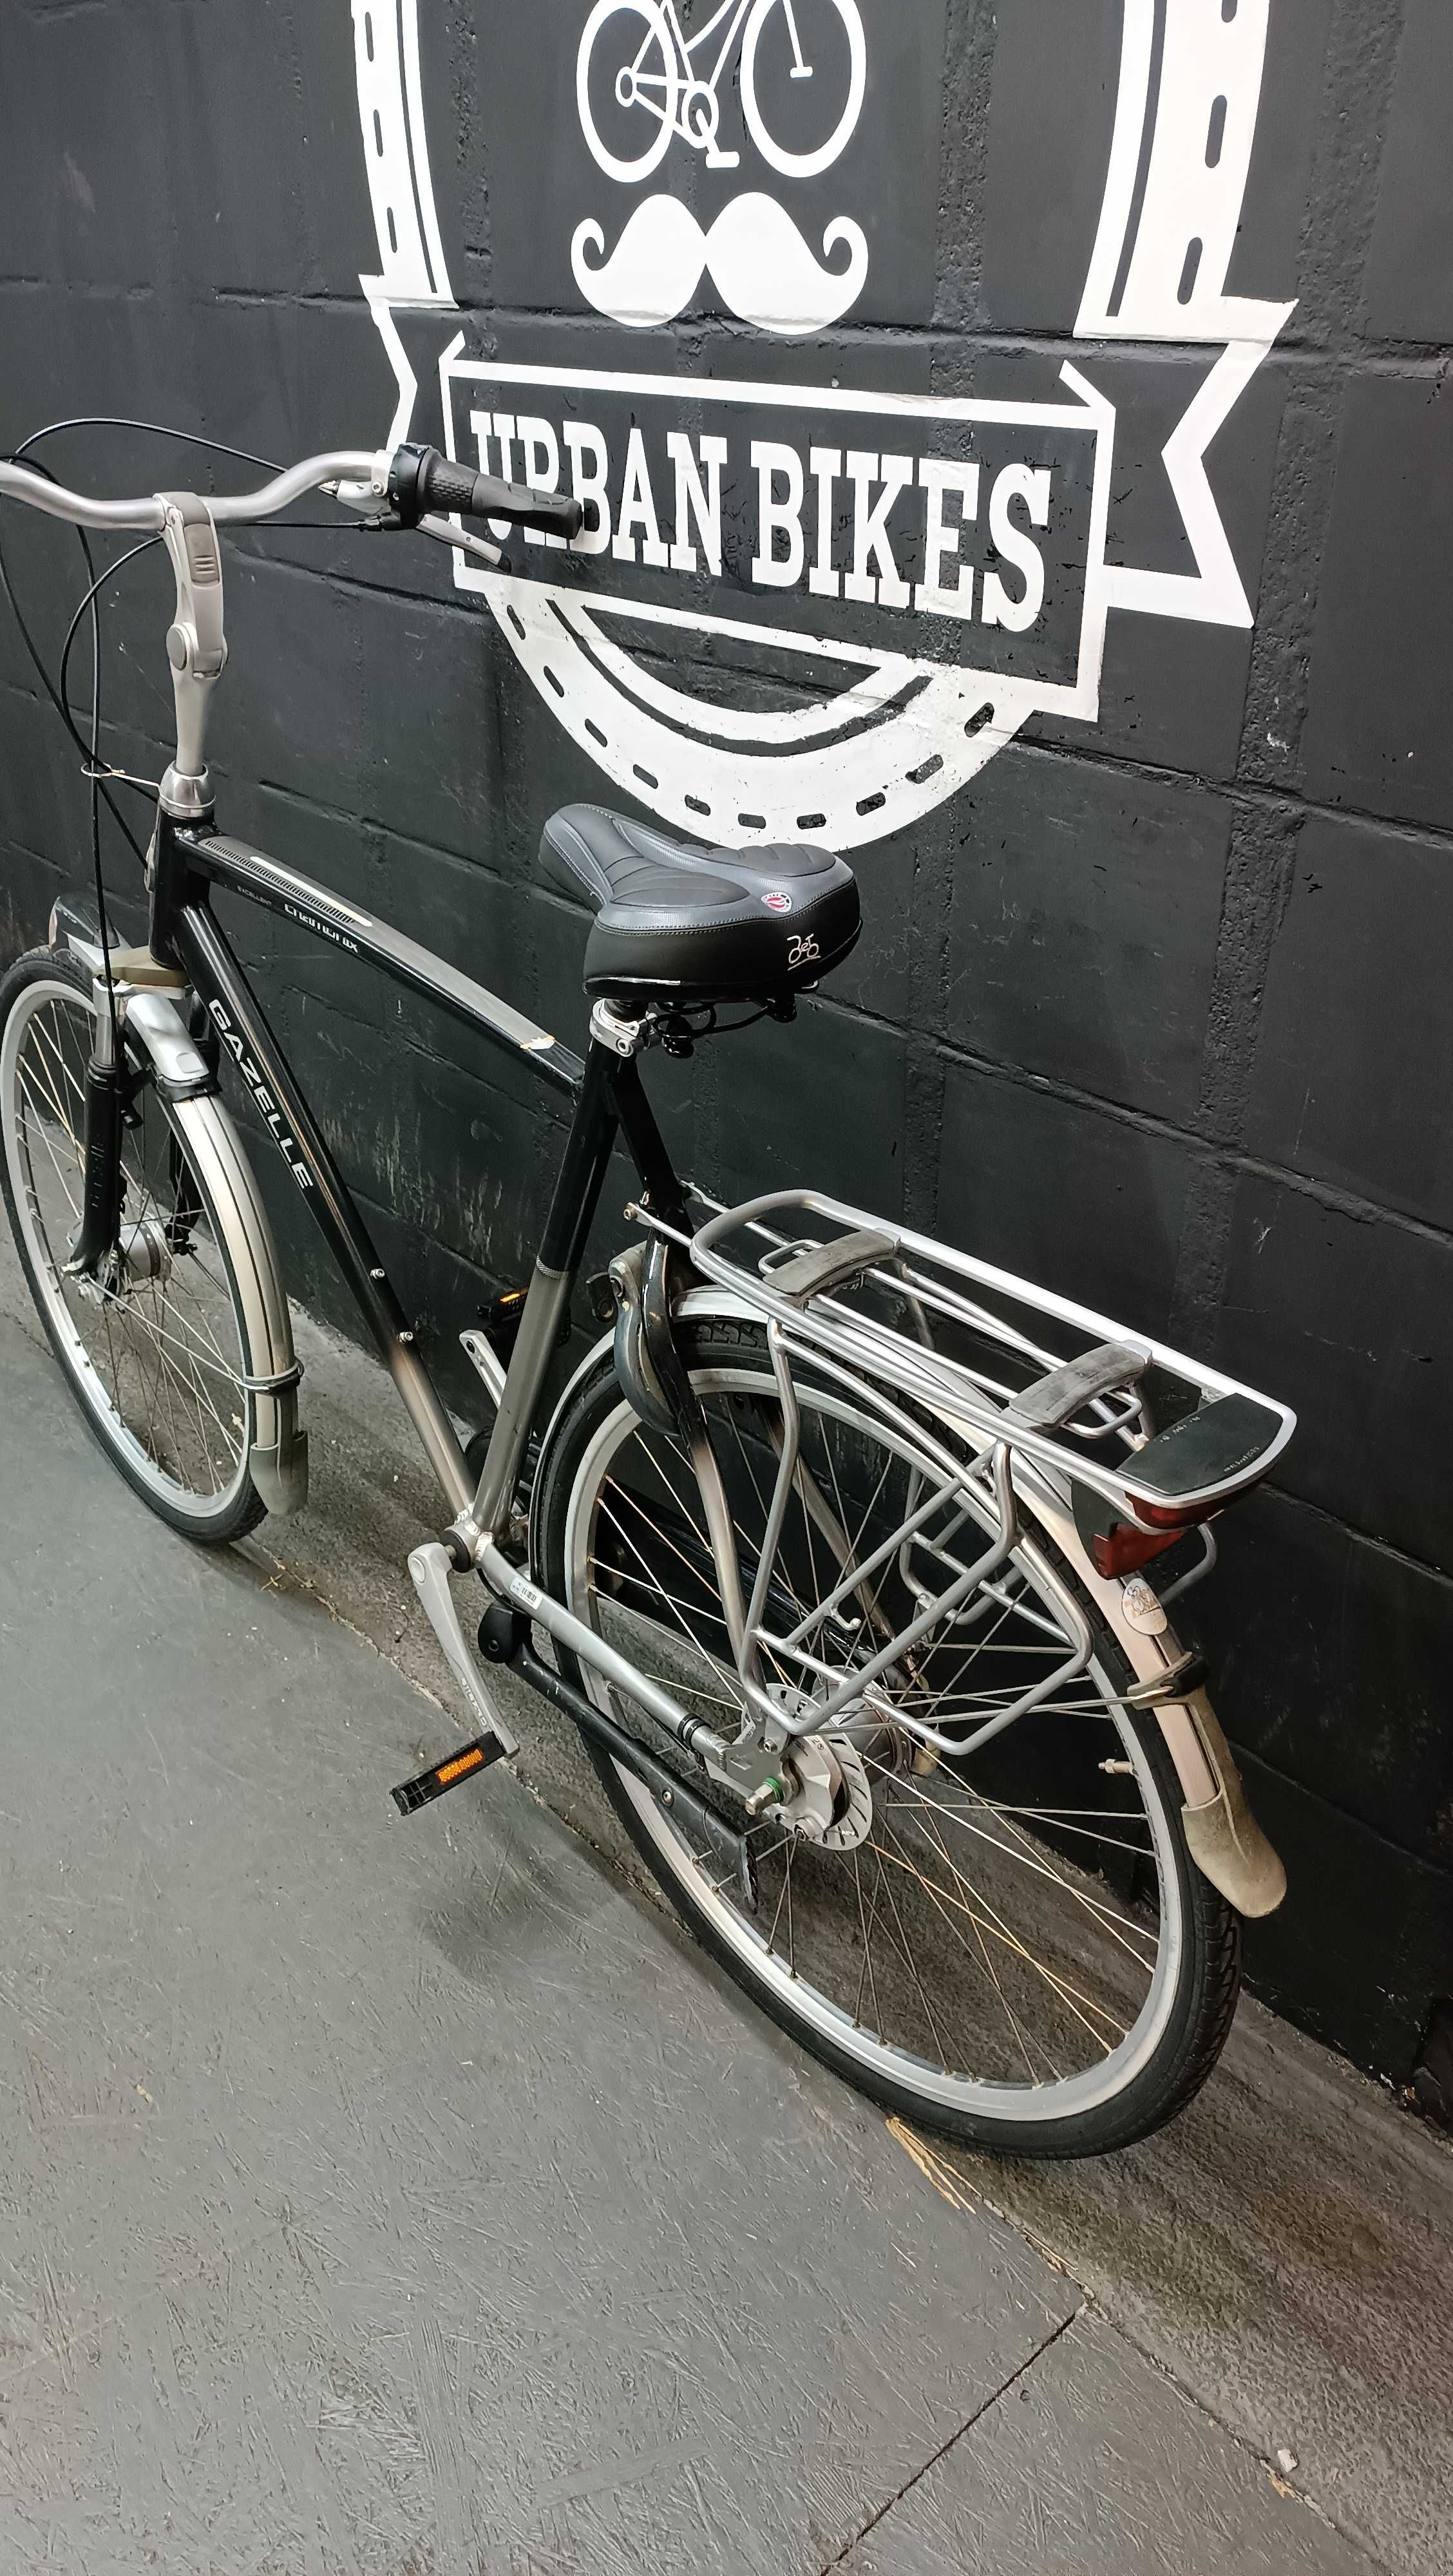 GAZELLE Chamonix męski rower miejski 61cm nexus 8 URBAN BIKES